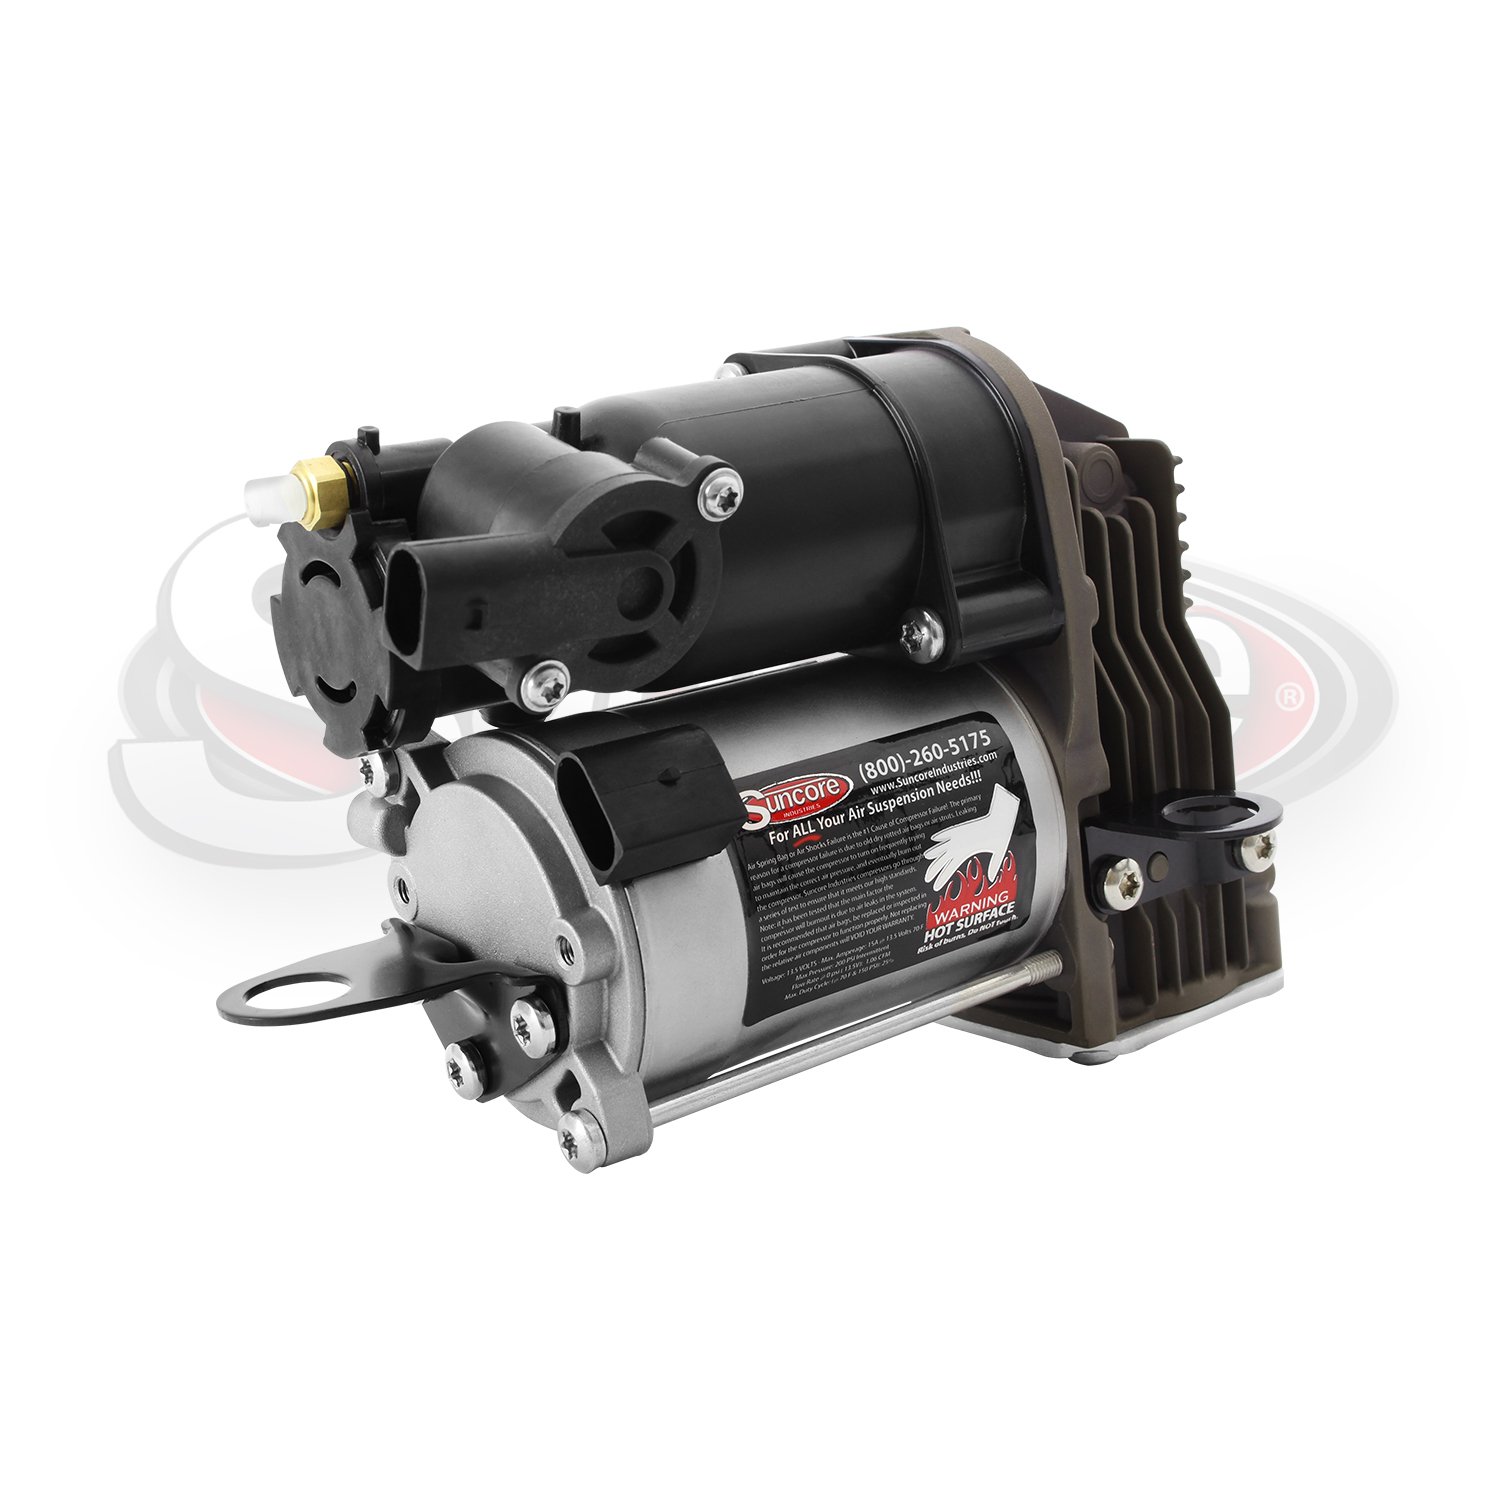 Airmatic Suspension Air Compressor Pump New -CL & S Class Repl. 2213201704